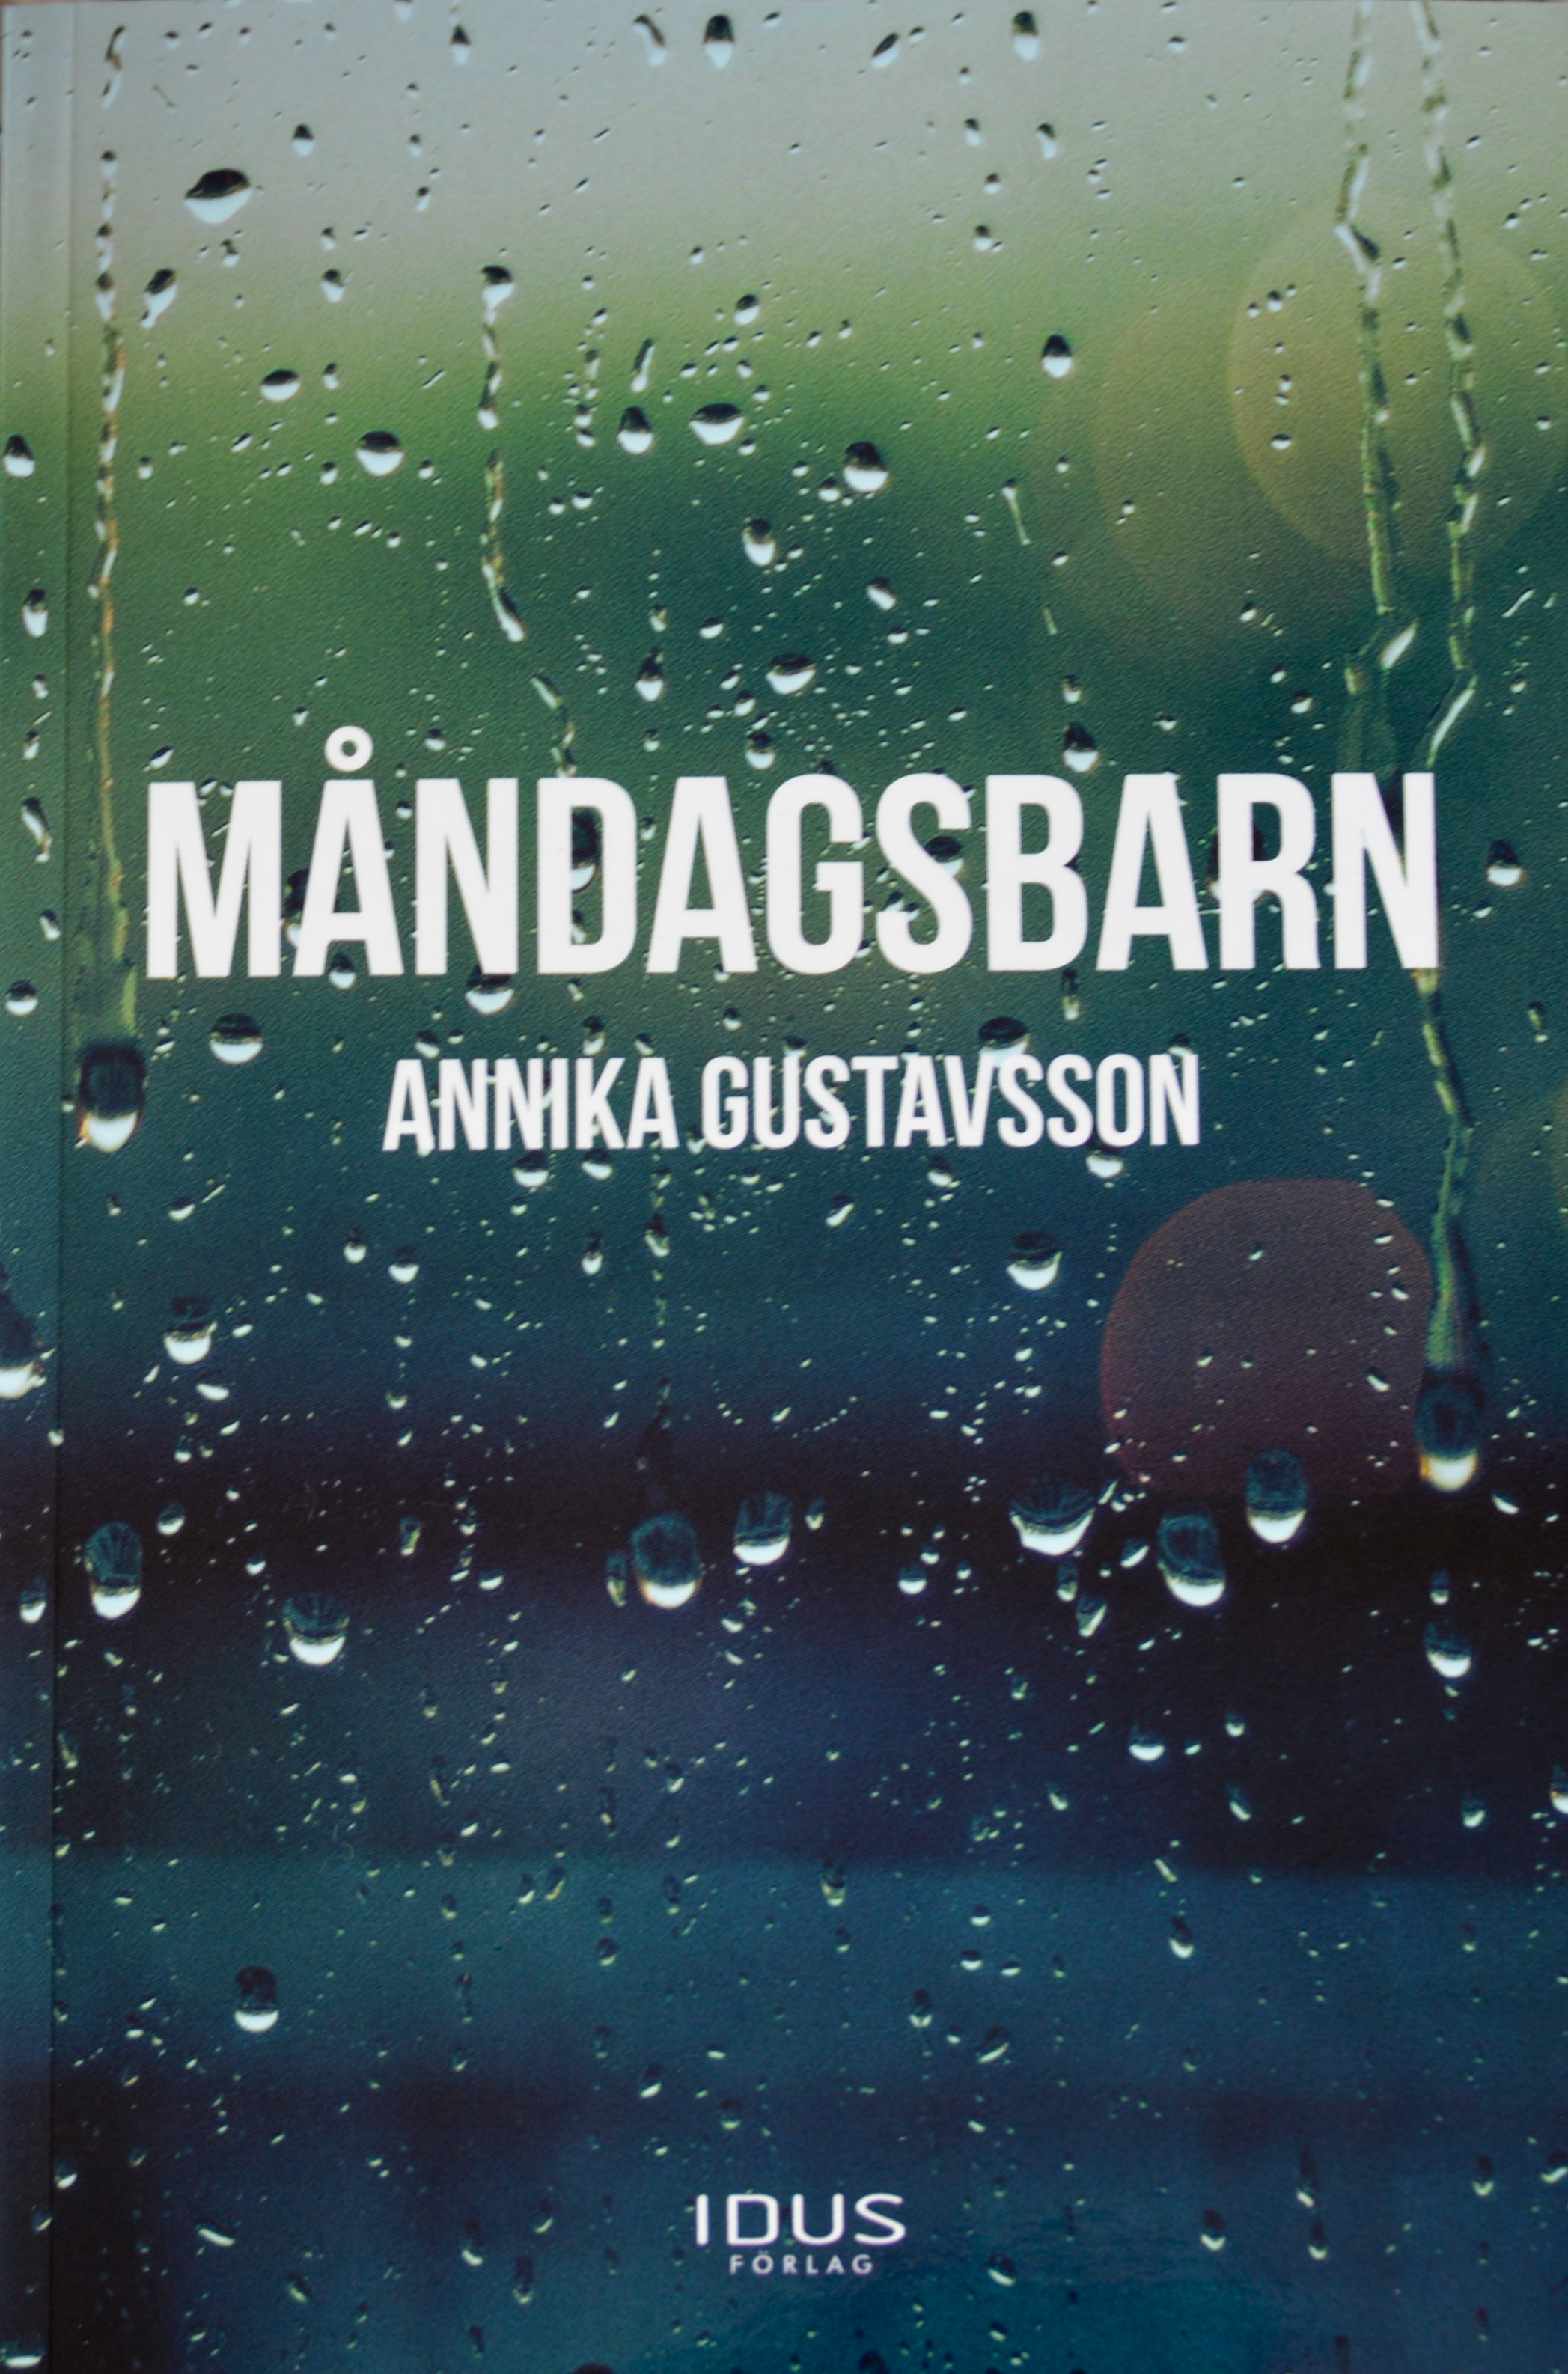 Boken Måndagsbarn, författare Annika Gustavsson, debutbok, utgivningsår 2017, om psykisk ohälsa